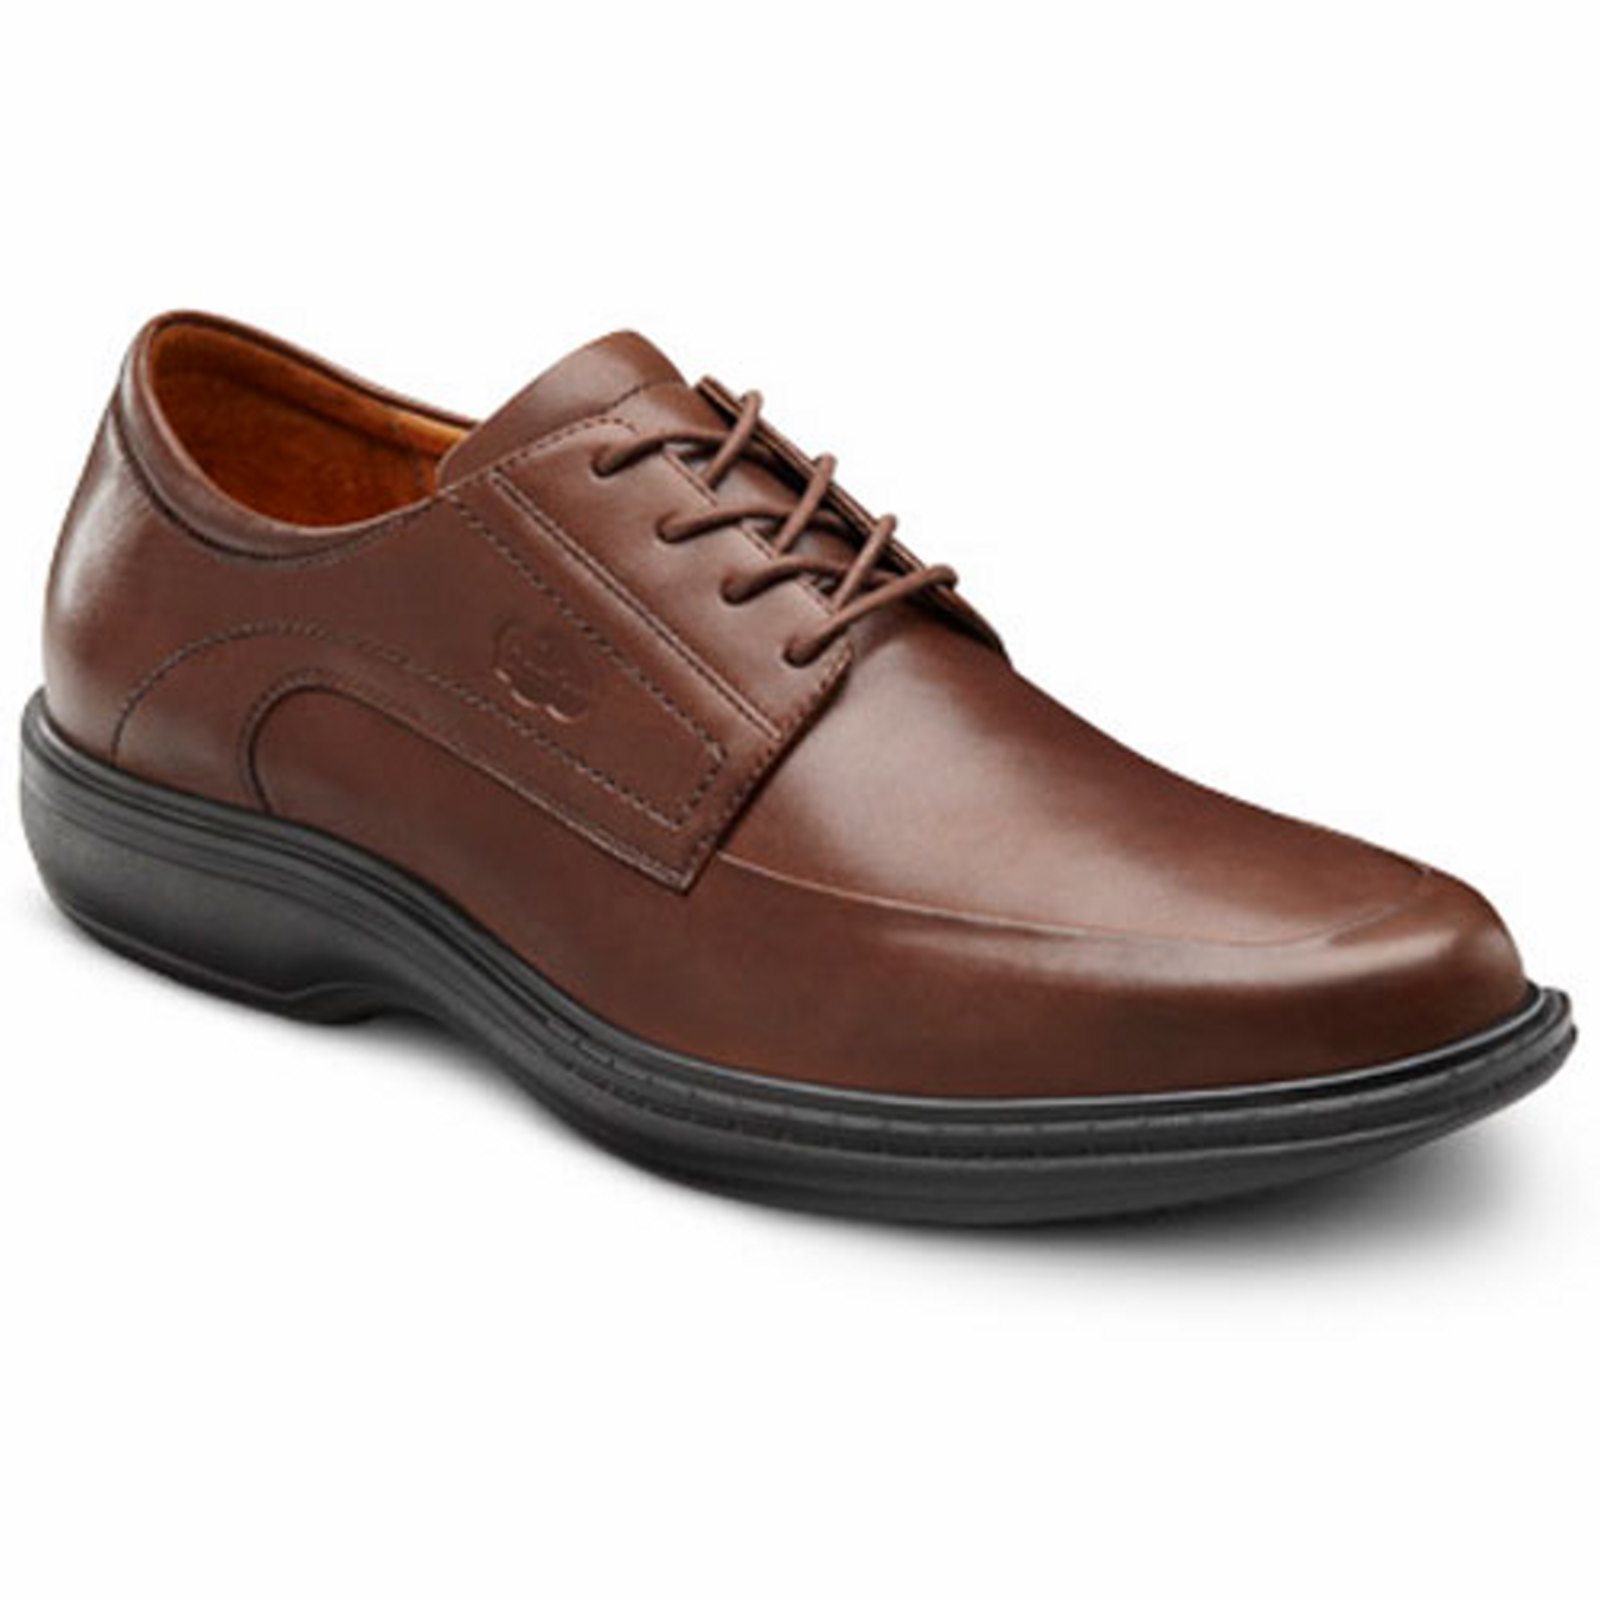 Dr. Comfort Classic Men's Dress Shoe: 10 Medium (B/D) Chestnut Lace - image 1 of 4